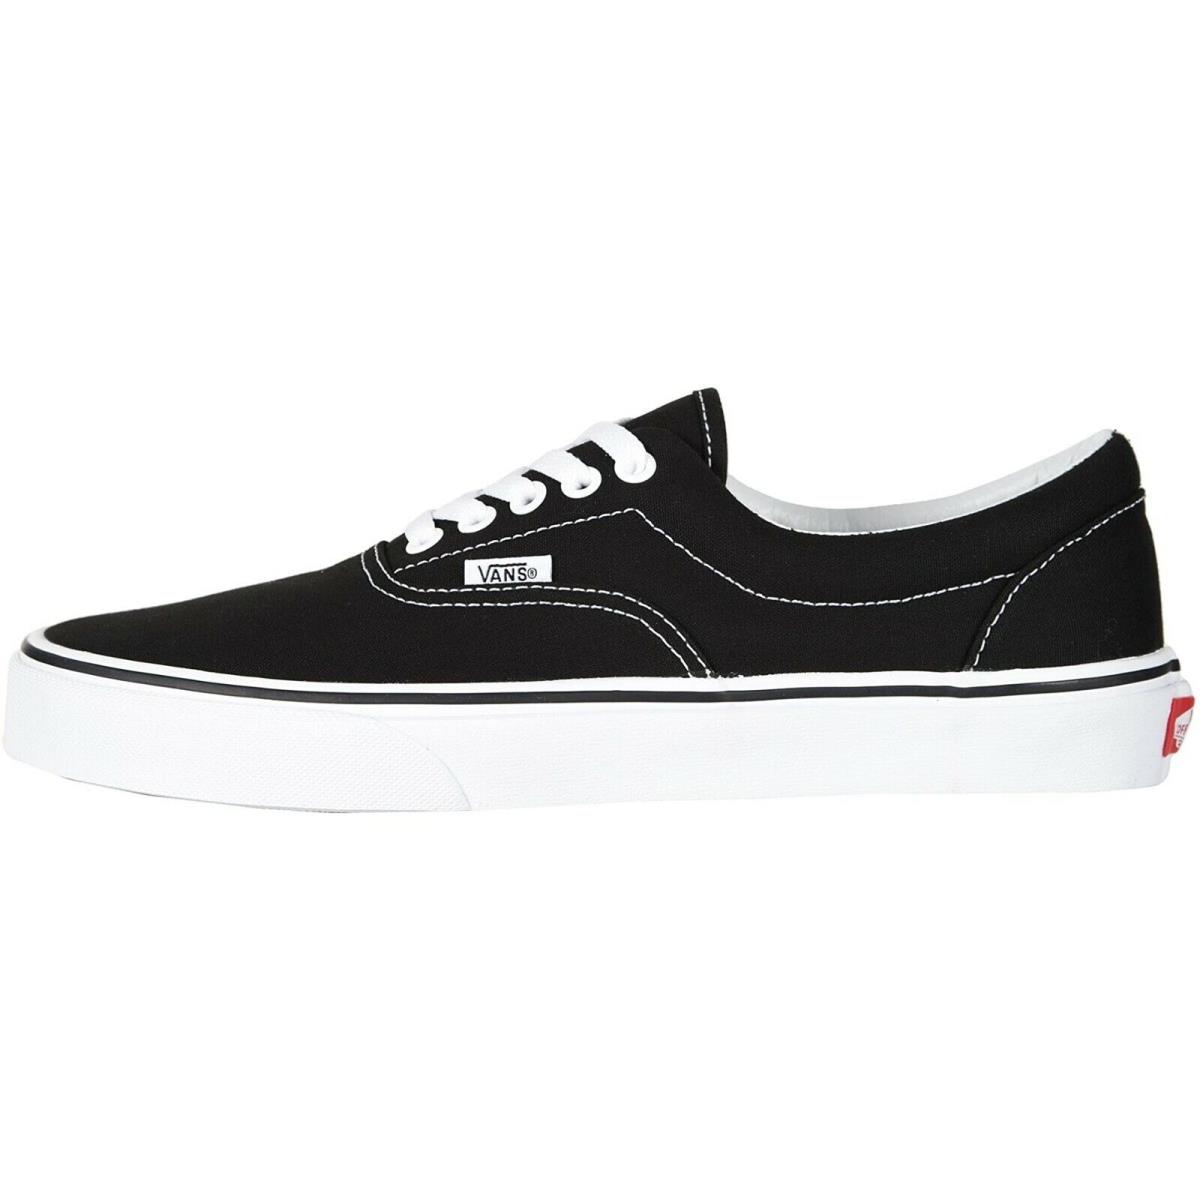 Vans Era Sneakers Black White Unisex Men Skate Shoes